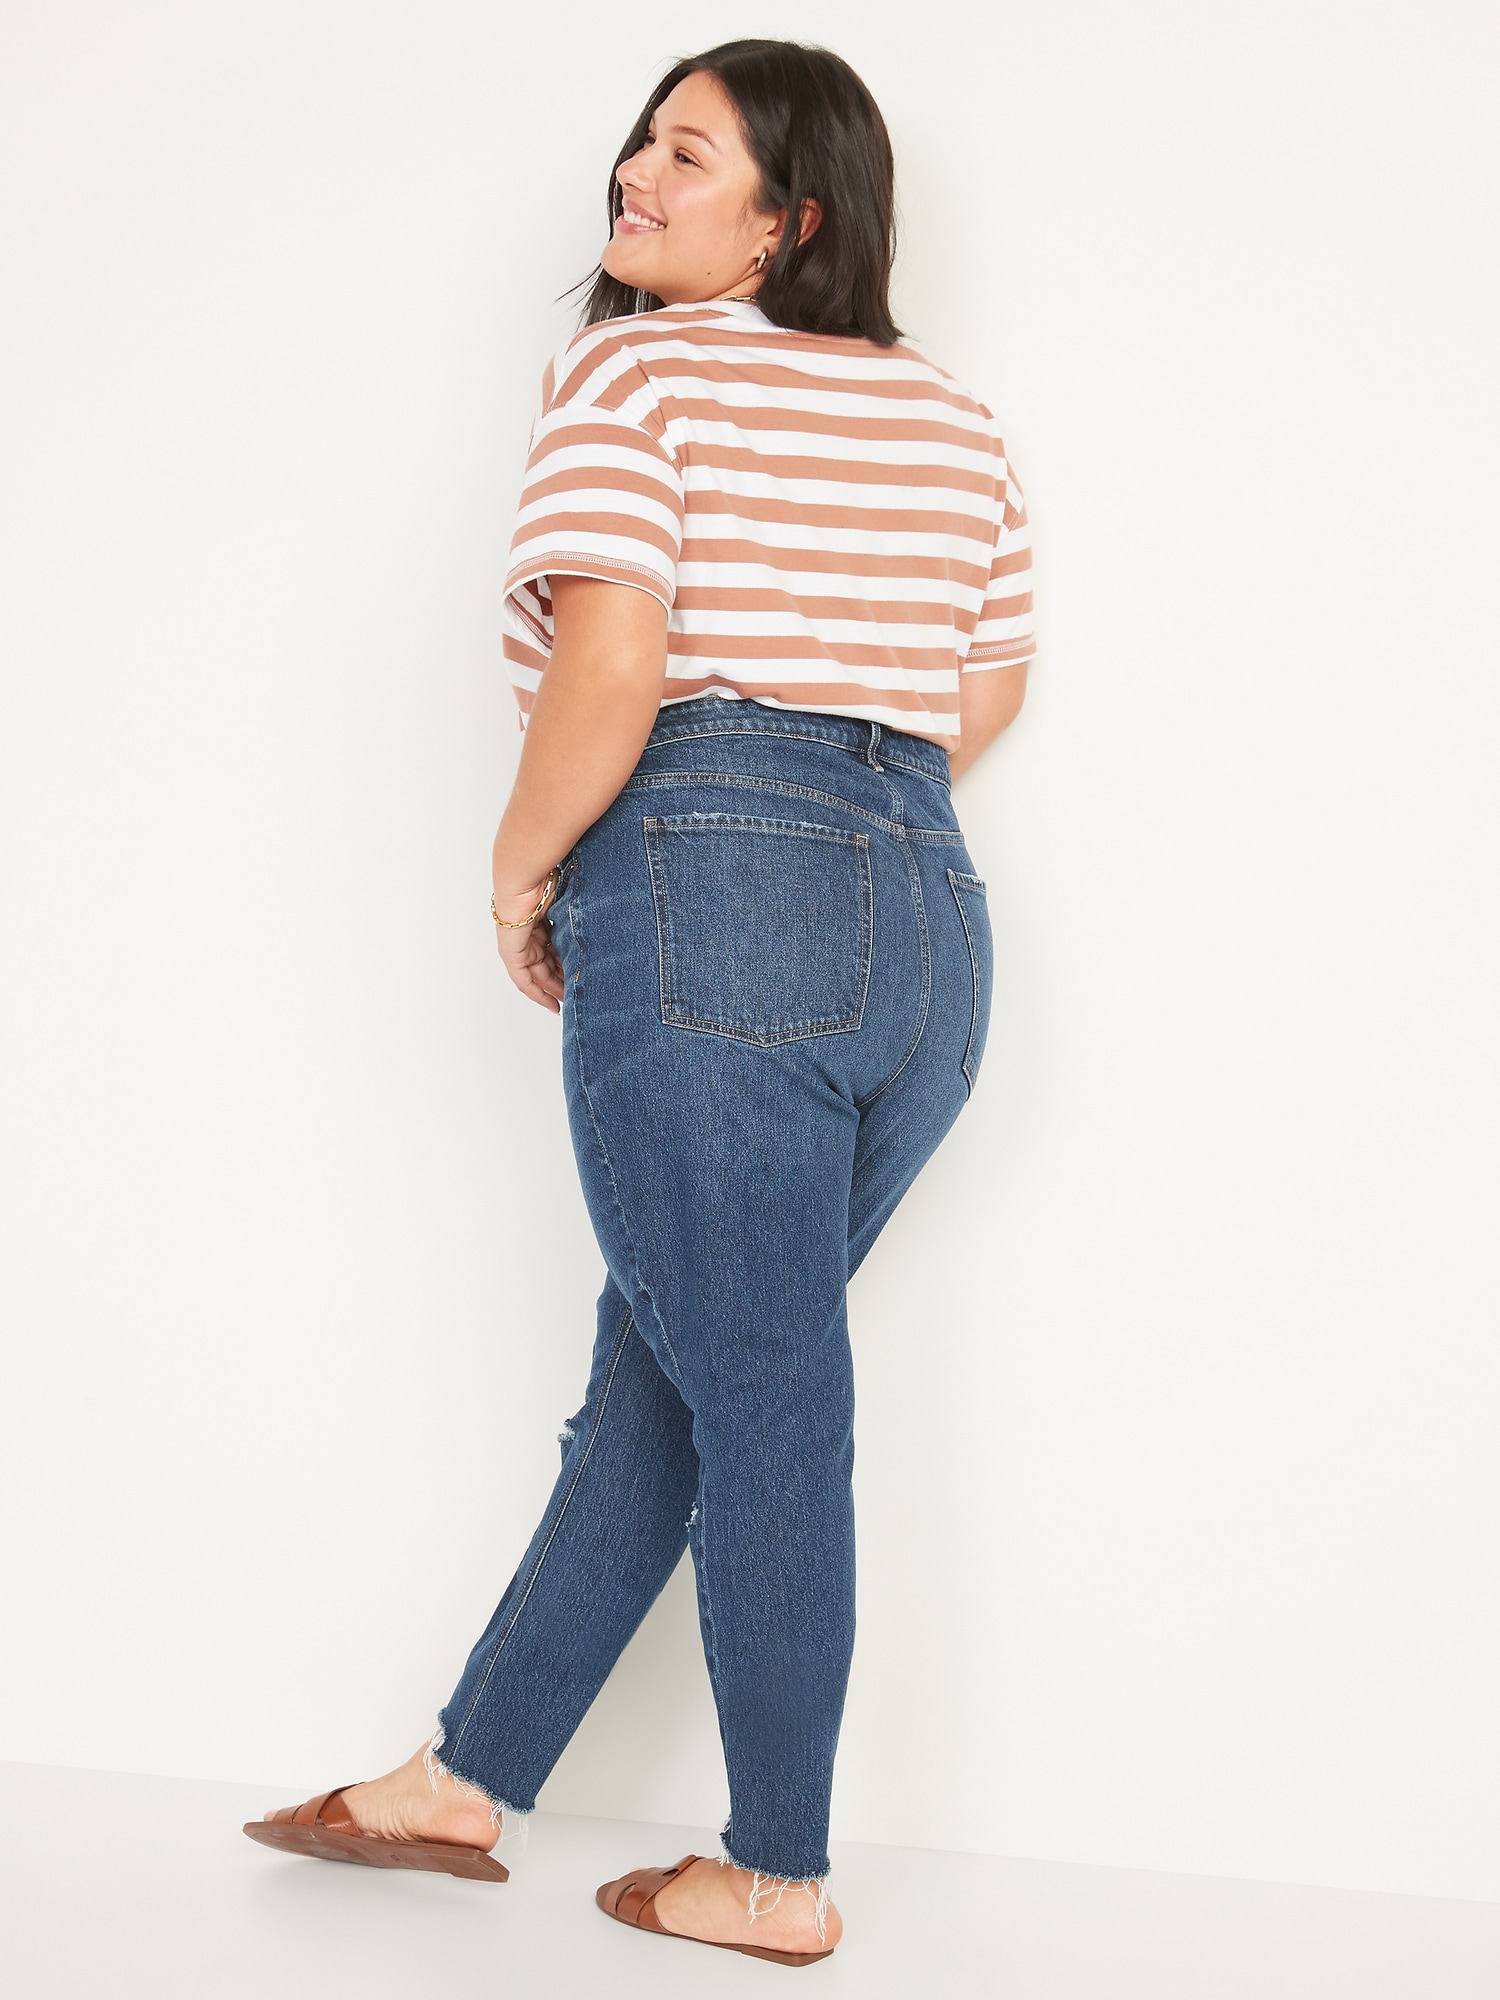 Wonderfit Skinny Jeans, Women